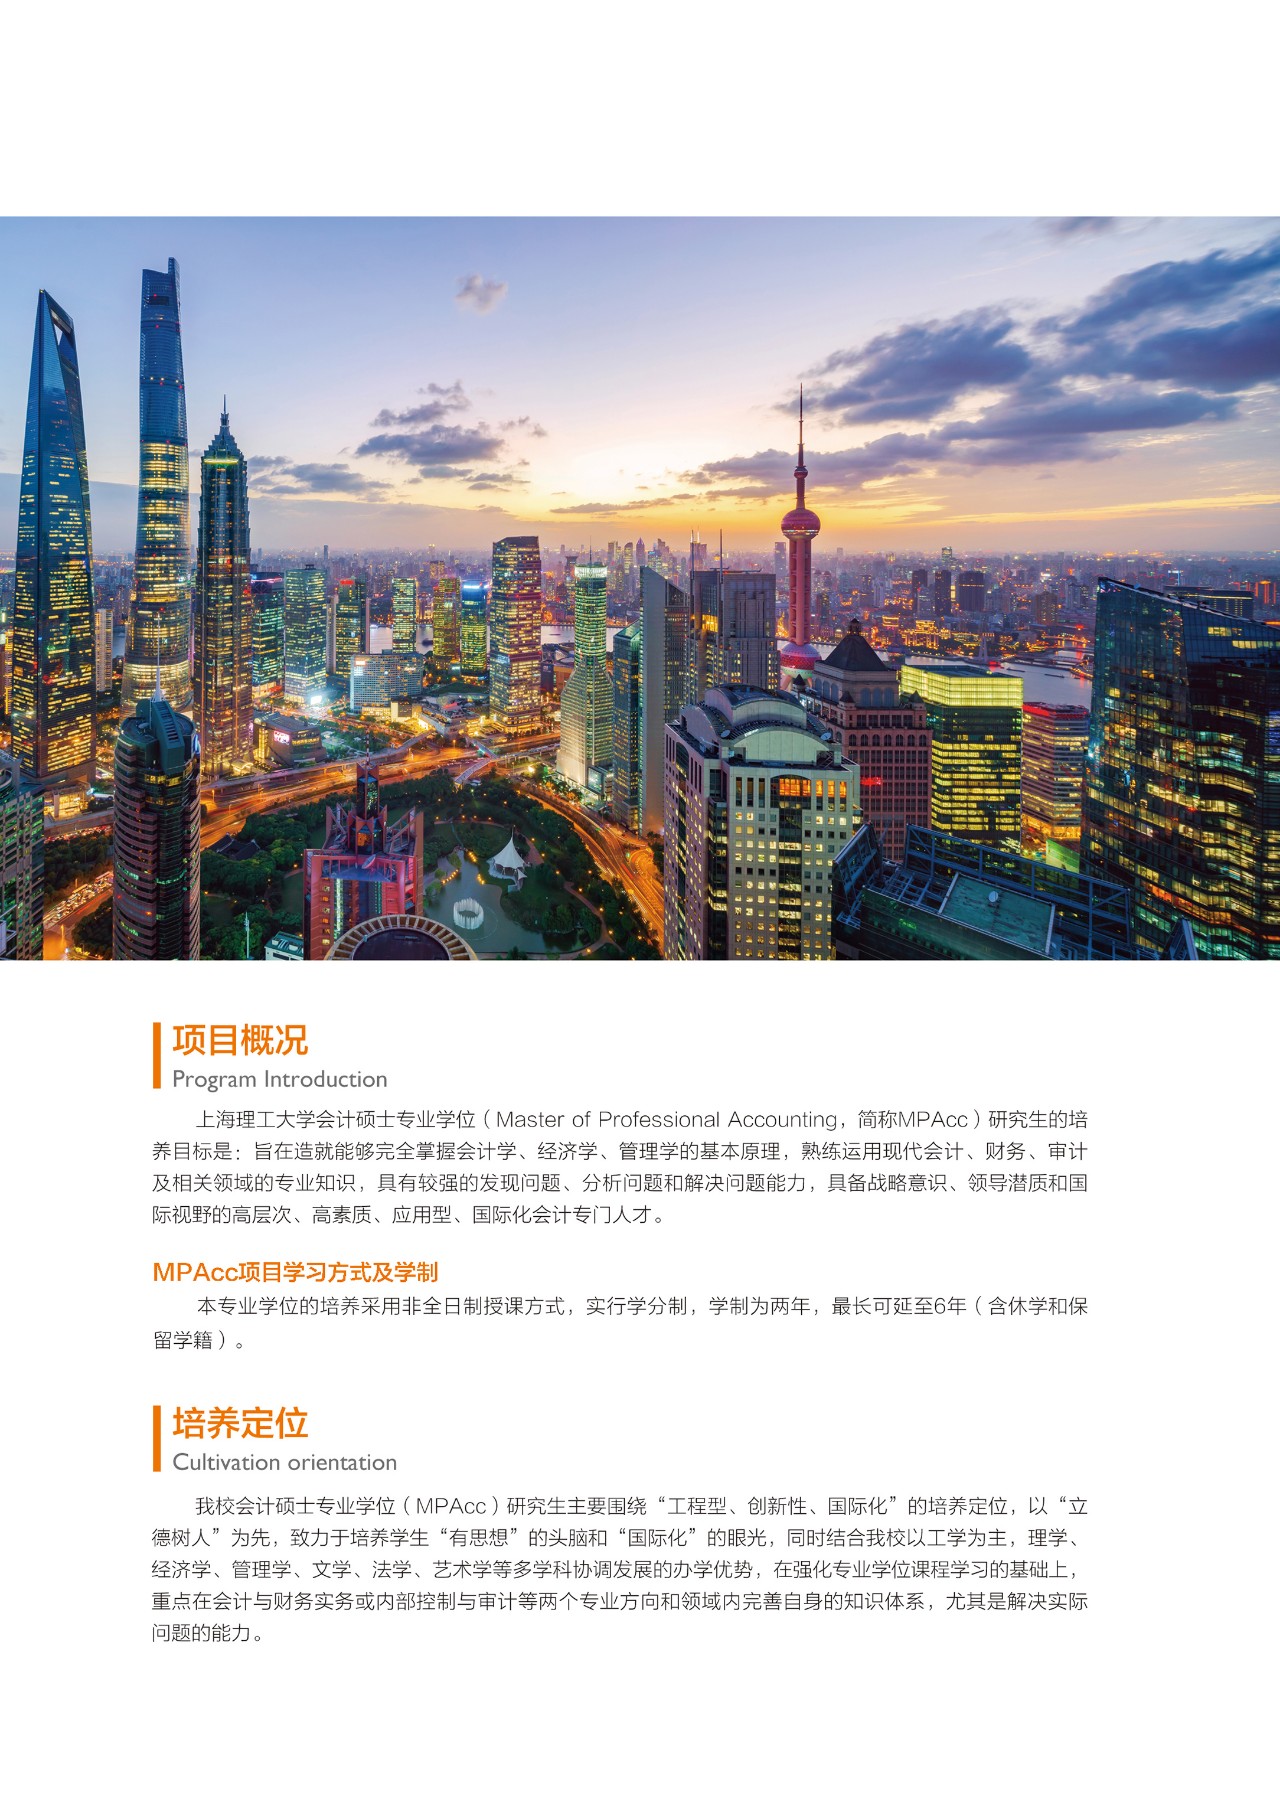 上海理工大学2020年MPAcc招生简章